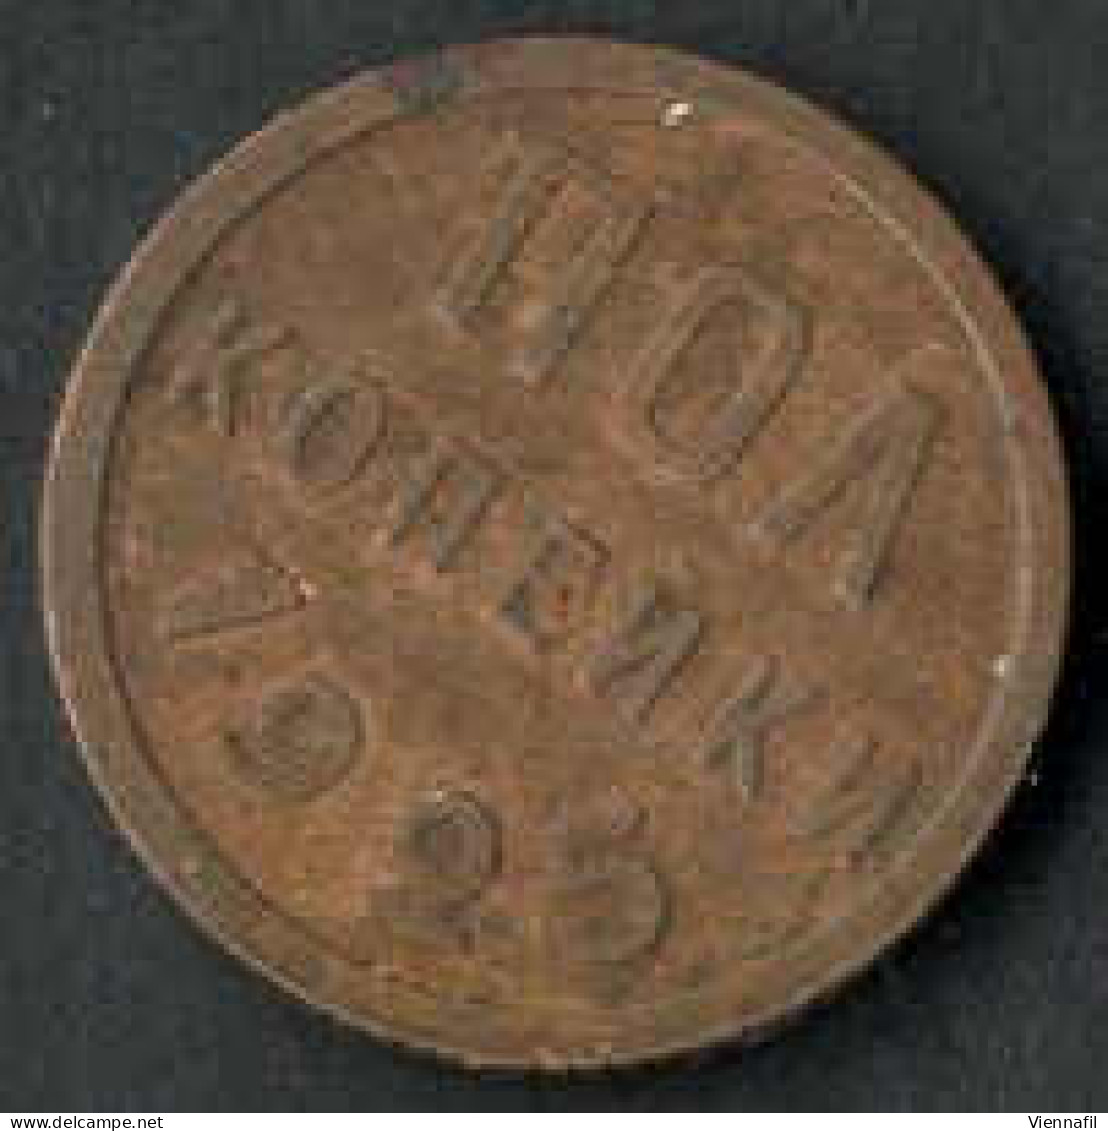 ½, 2, 15, 20, 50 Kopeken und 1 Rubel 1922/27, Lot mit sechs Münzen, davon vier Silbermünze, sehr schön bis vorzüglich-, 